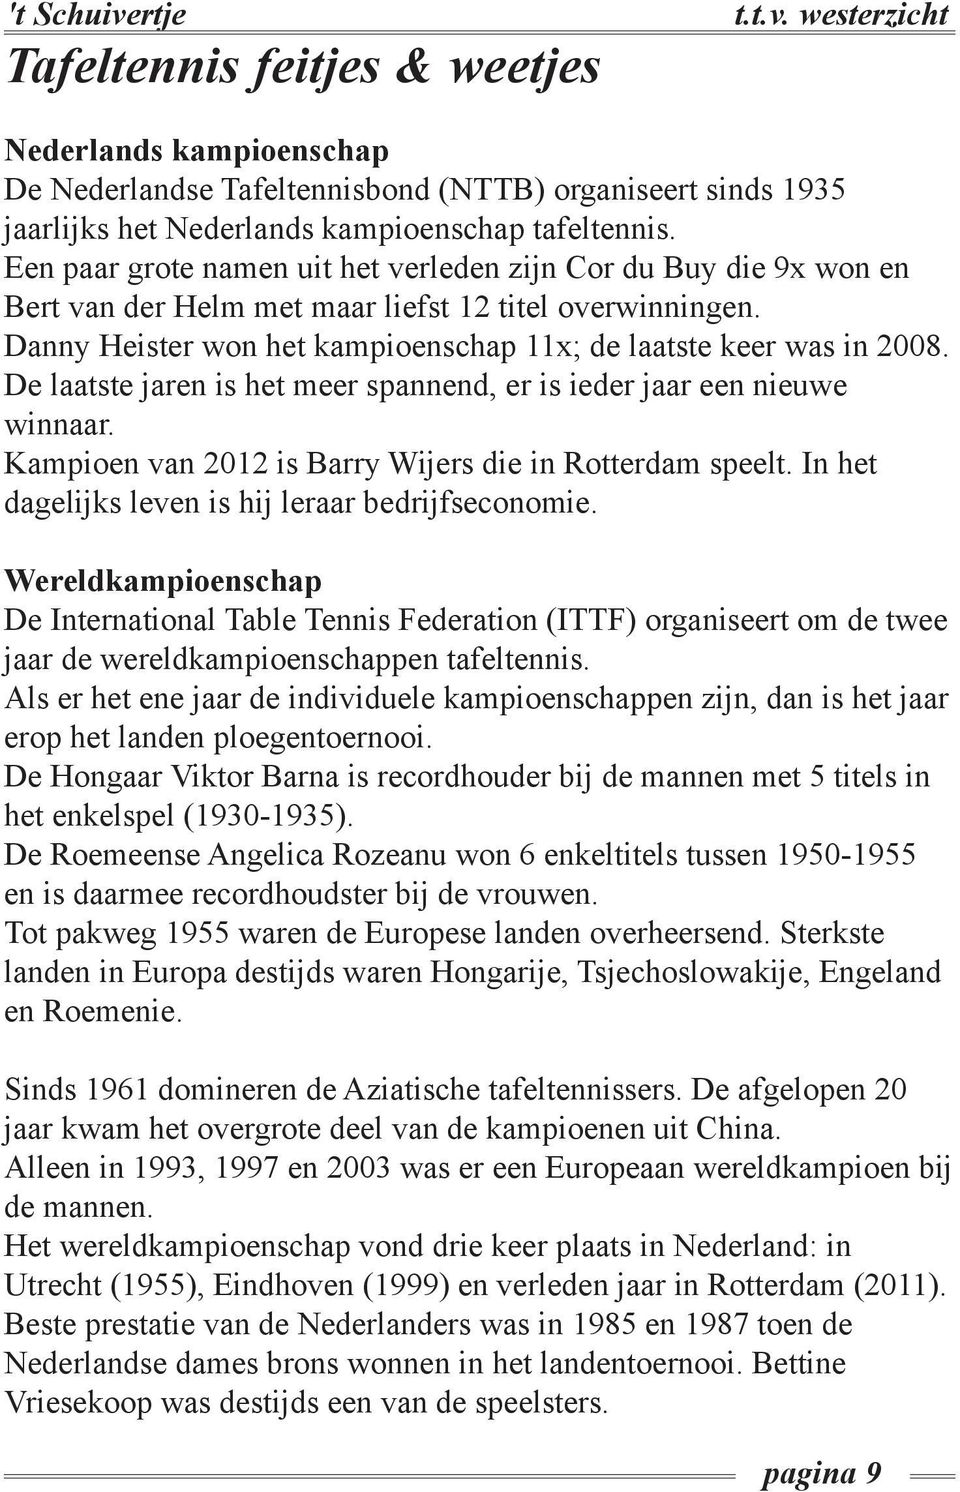 De laatste jaren is het meer spannend, er is ieder jaar een nieuwe winnaar. Kampioen van 2012 is Barry Wijers die in Rotterdam speelt. In het dagelijks leven is hij leraar bedrijfseconomie.